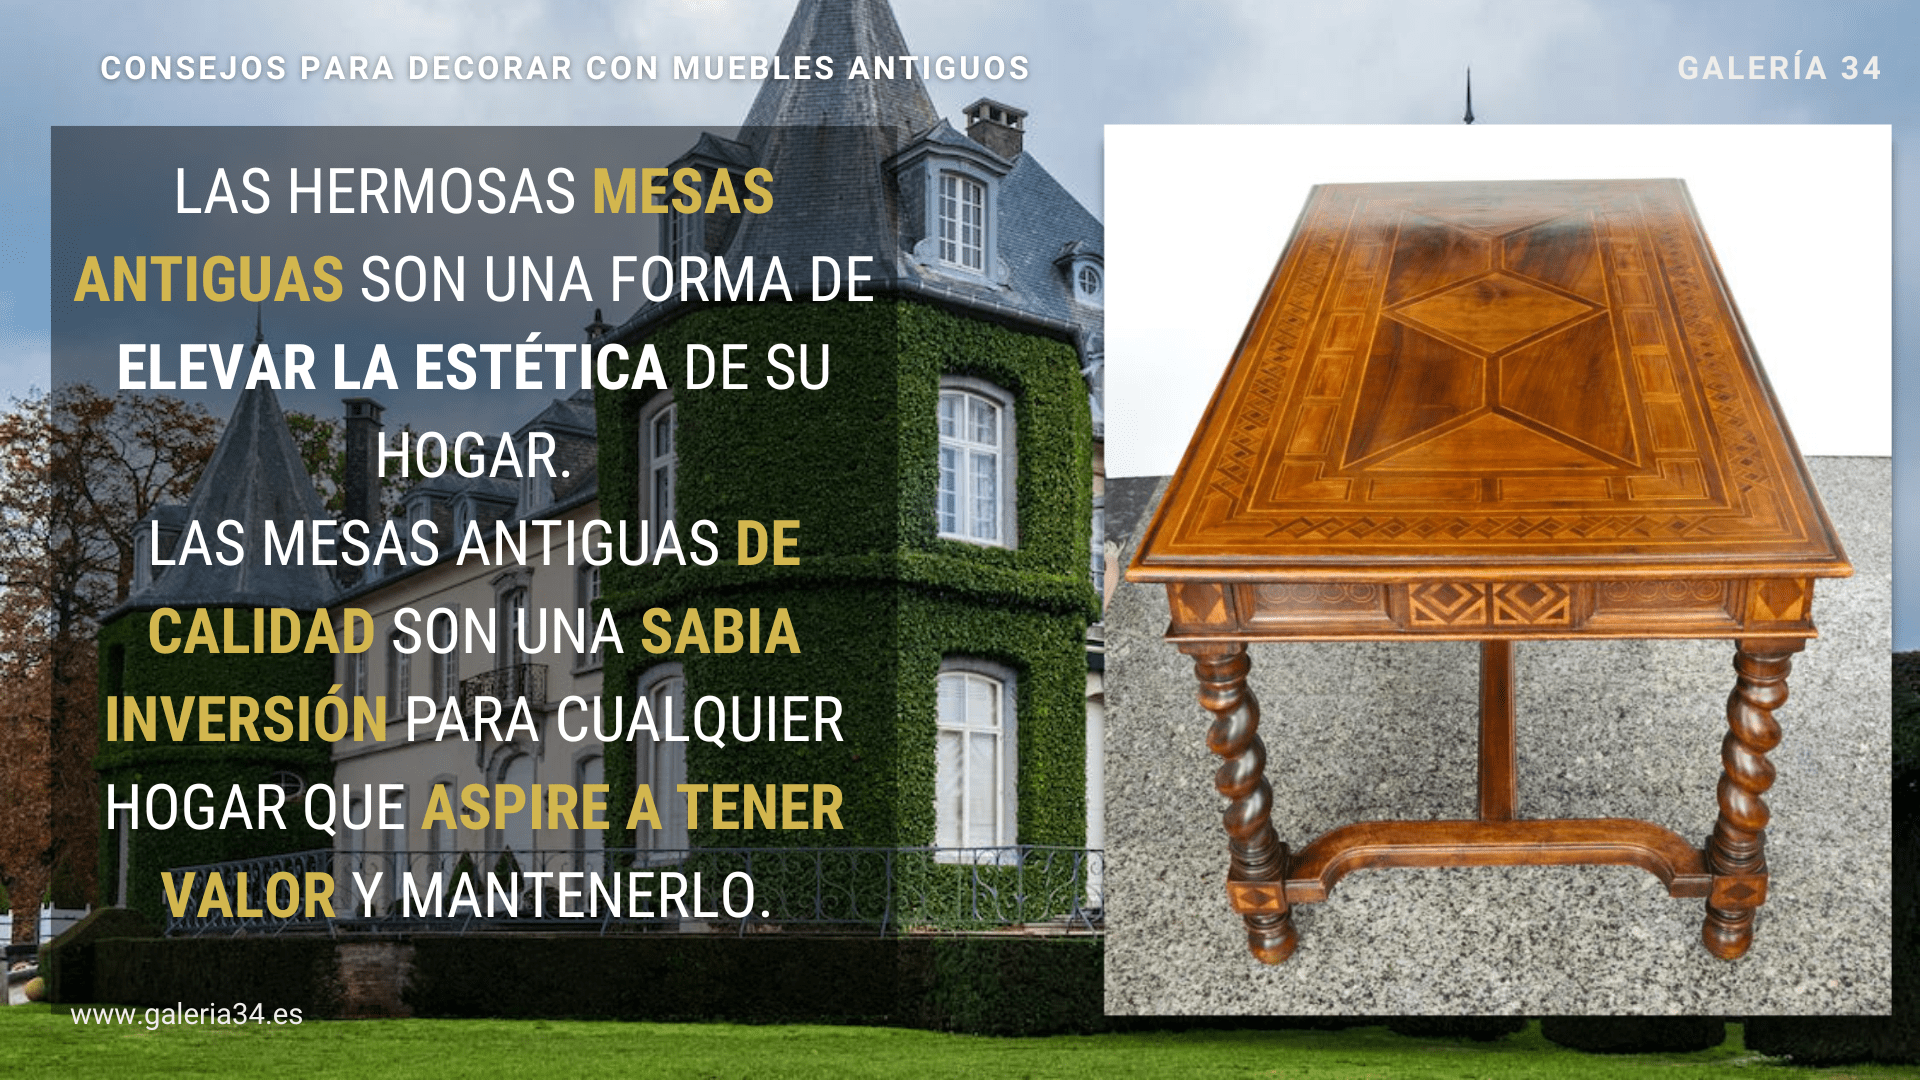 Las hermosas mesas antiguas son una forma de elevar la estética de su hogar.